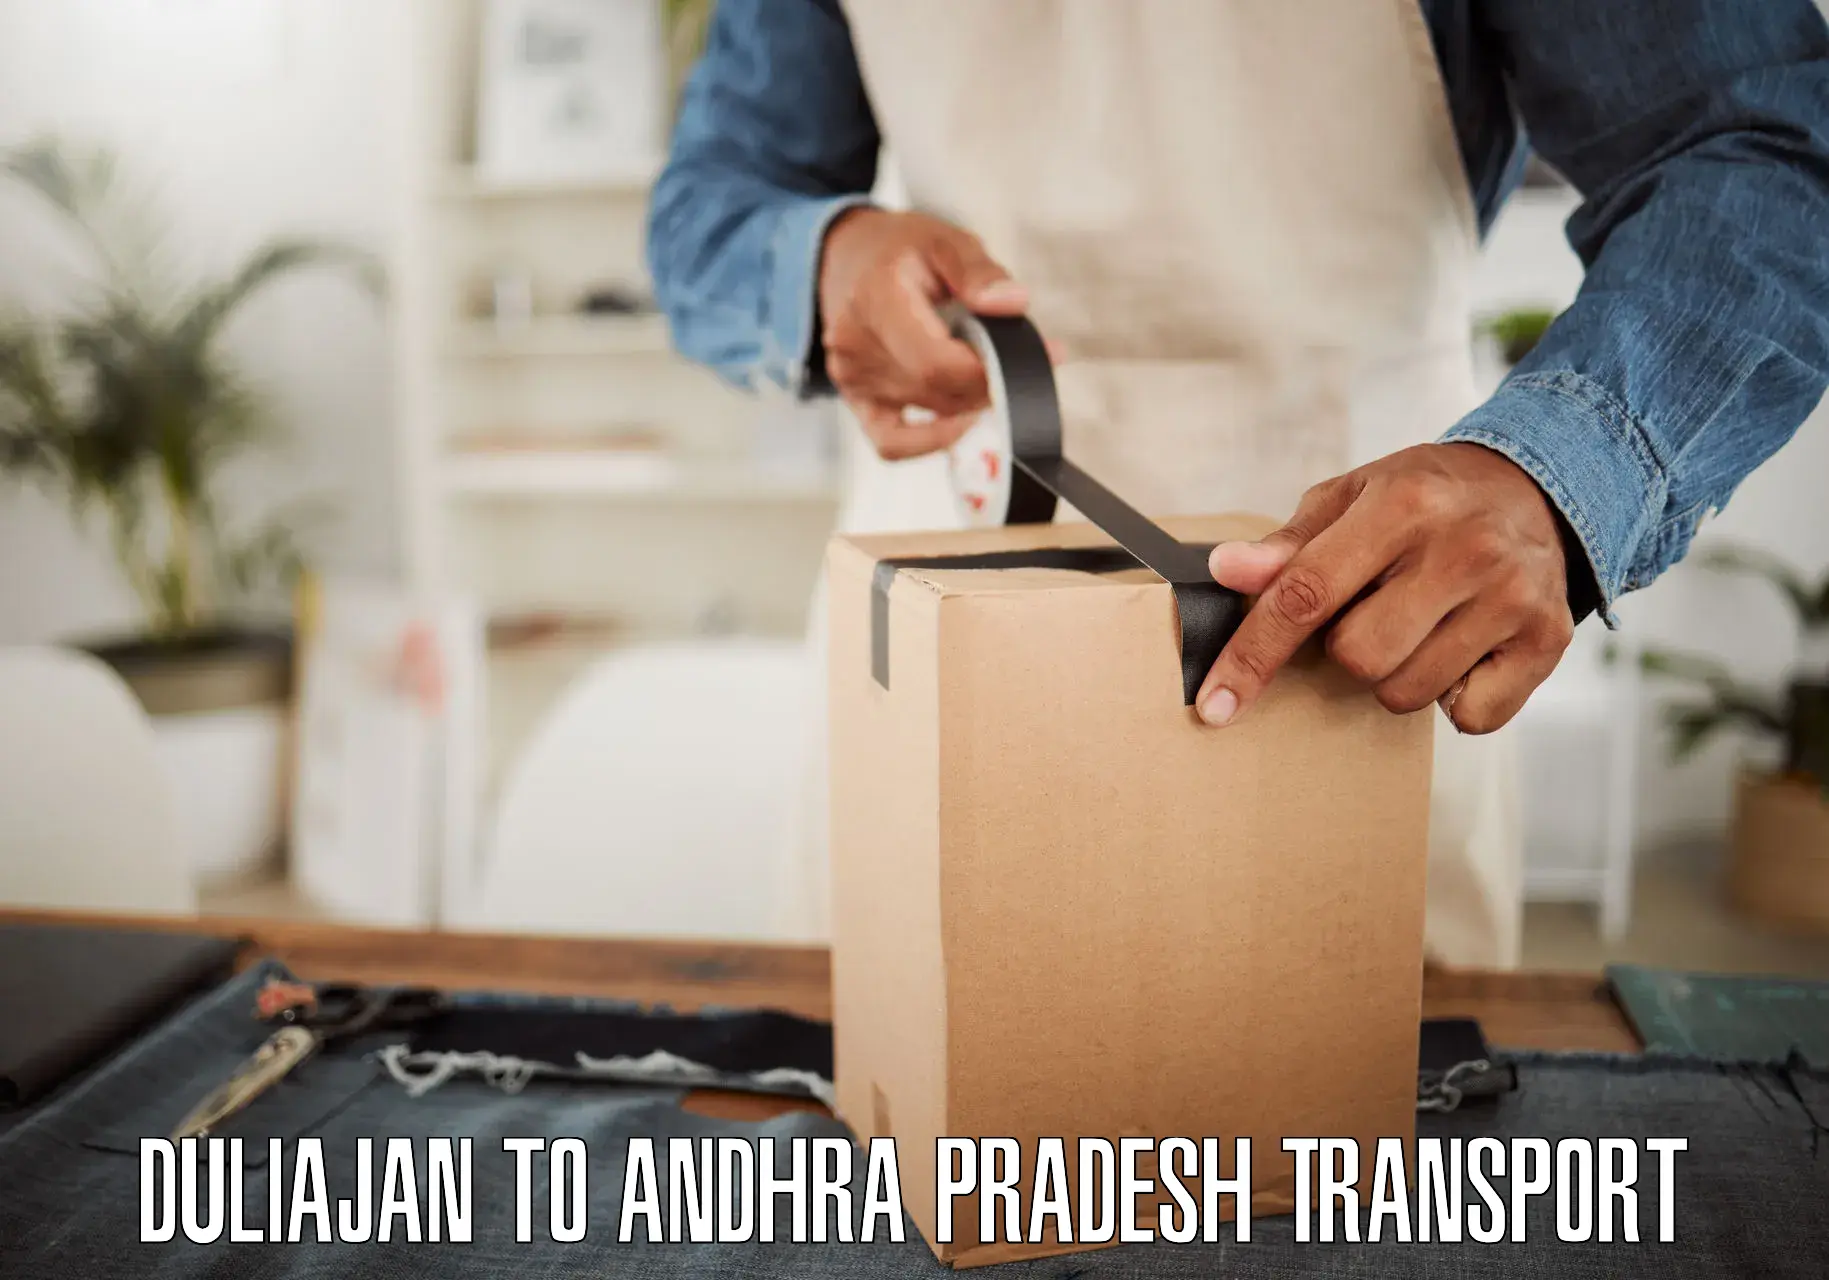 Interstate transport services Duliajan to Andhra Pradesh